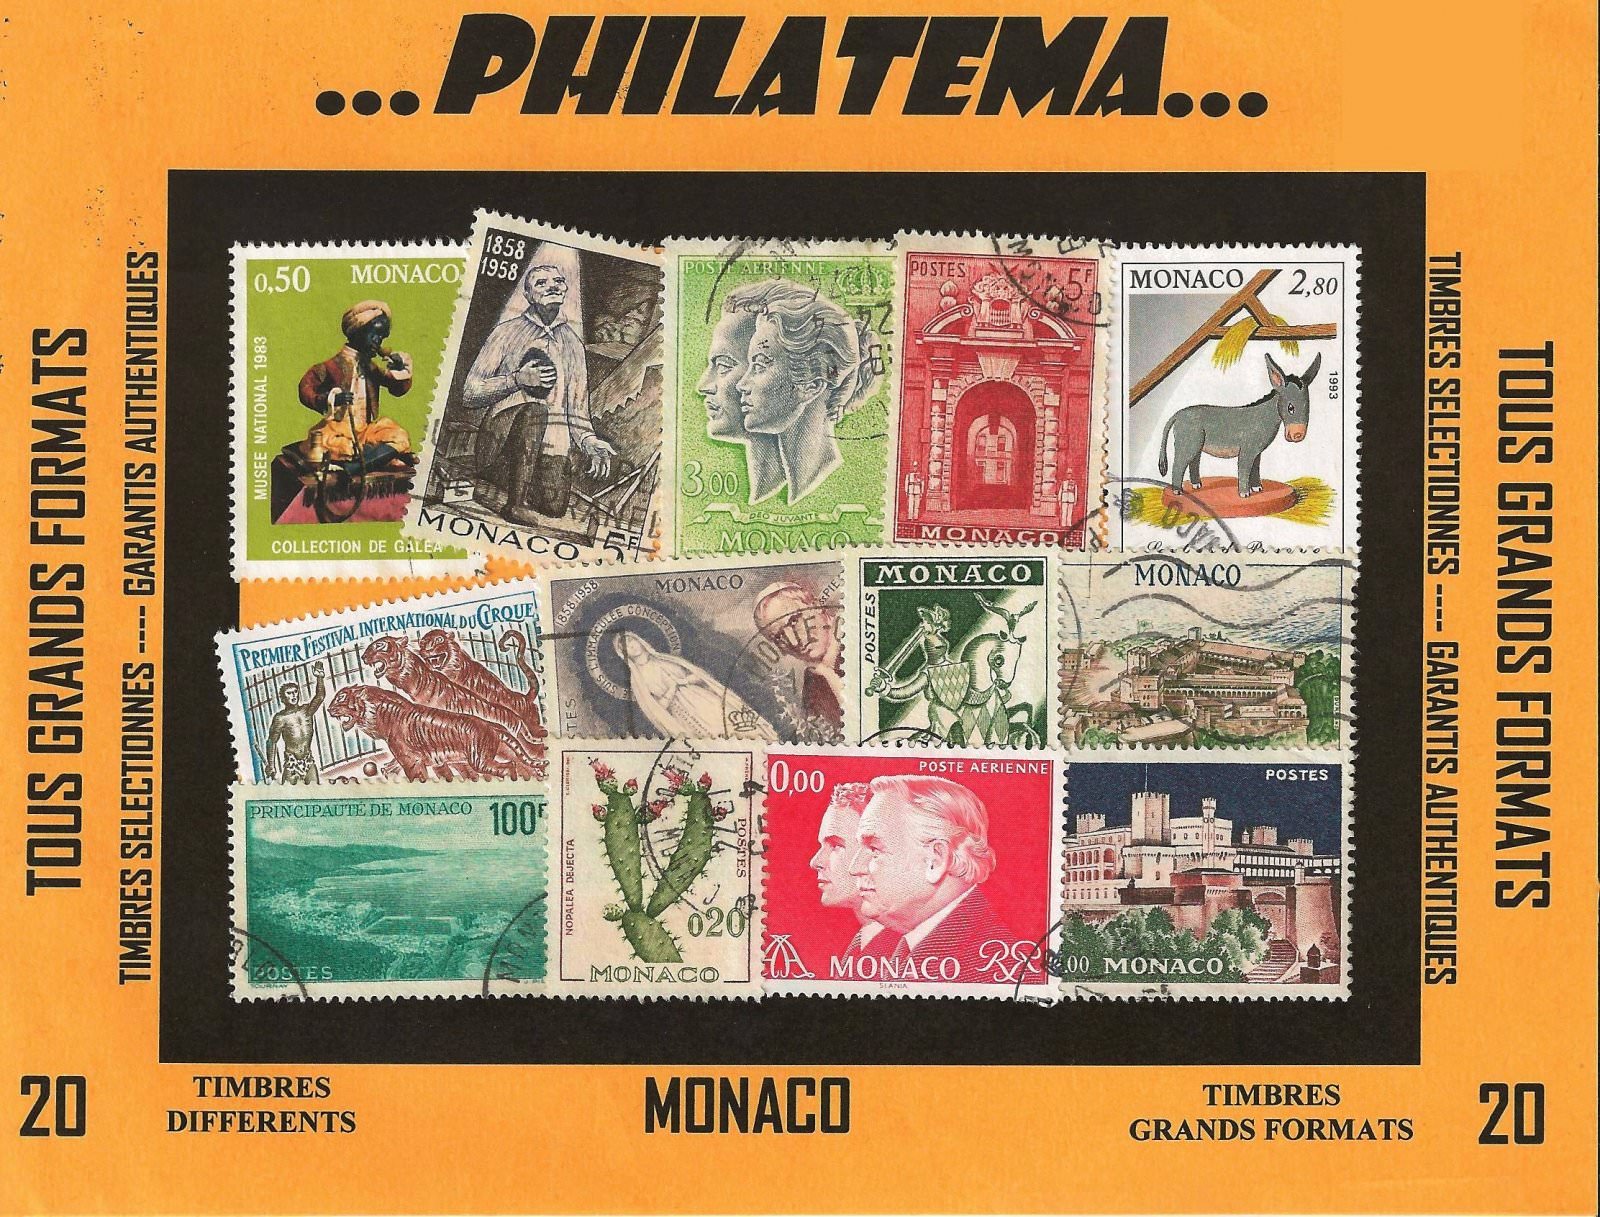 20 timbres MONACOd